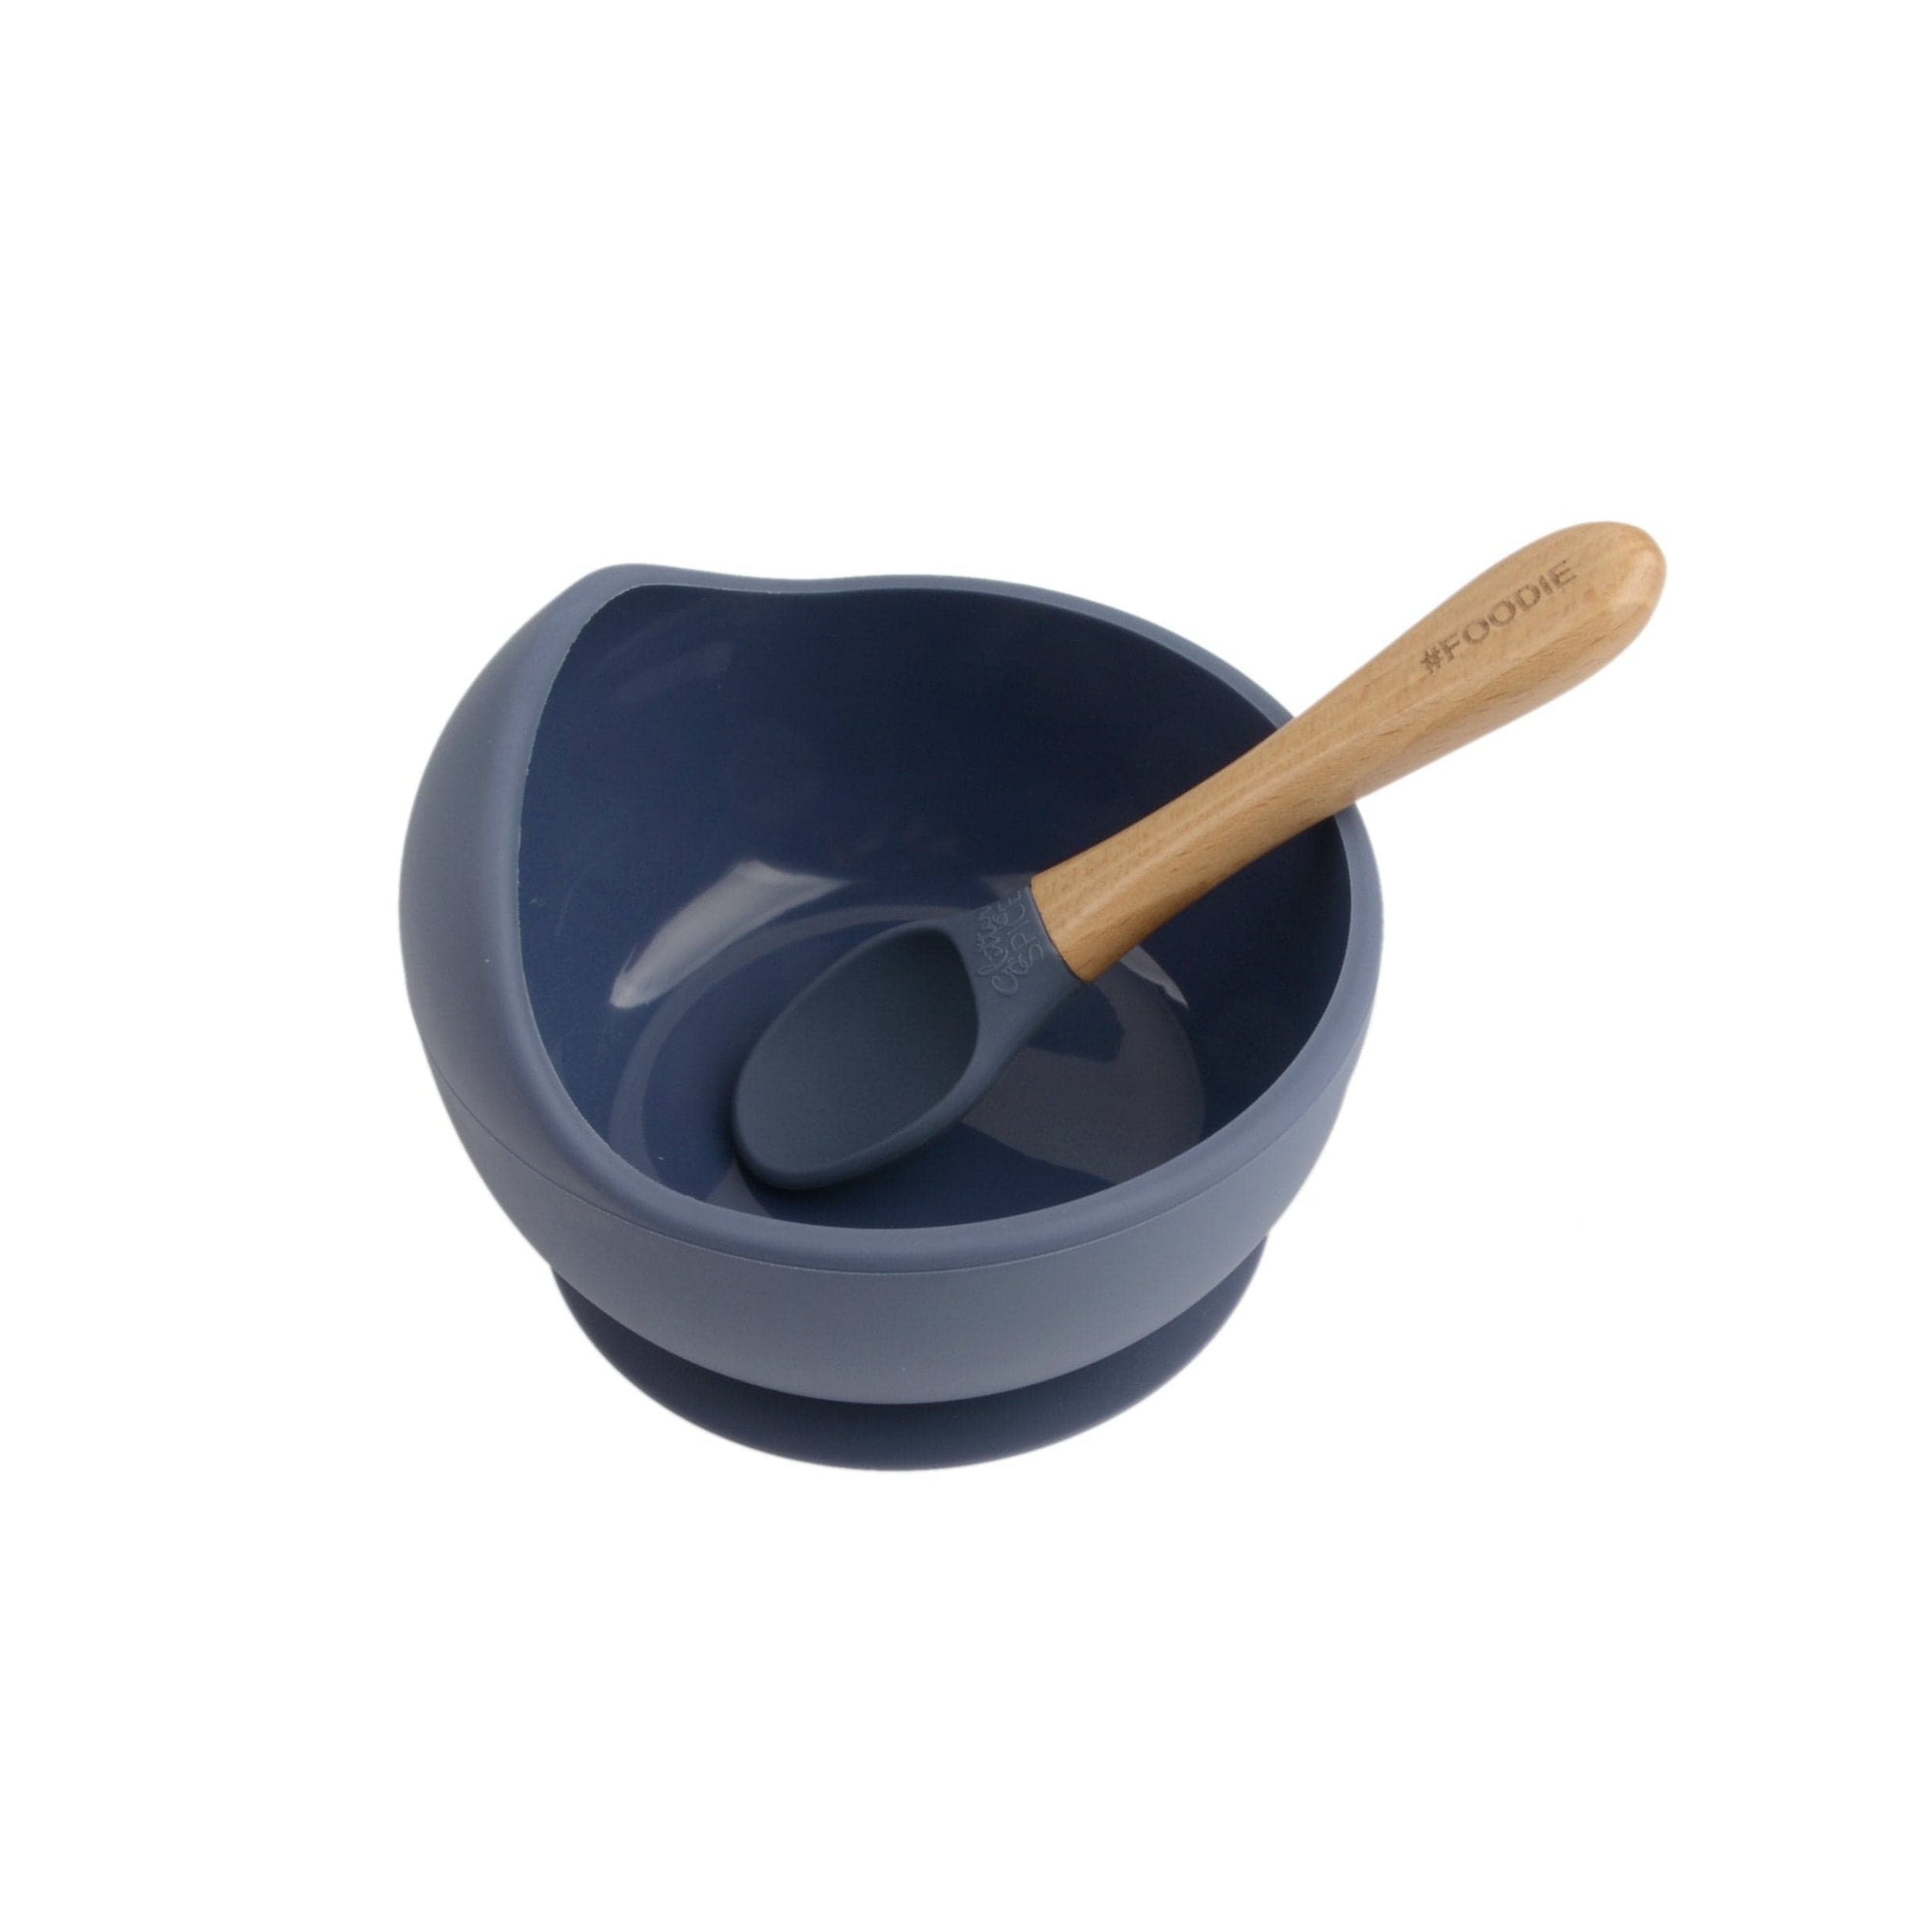 Glitter & Spice silicone bowl set Glitter & Spice Silicone Bowl & Spoon Set - Midnight Blue